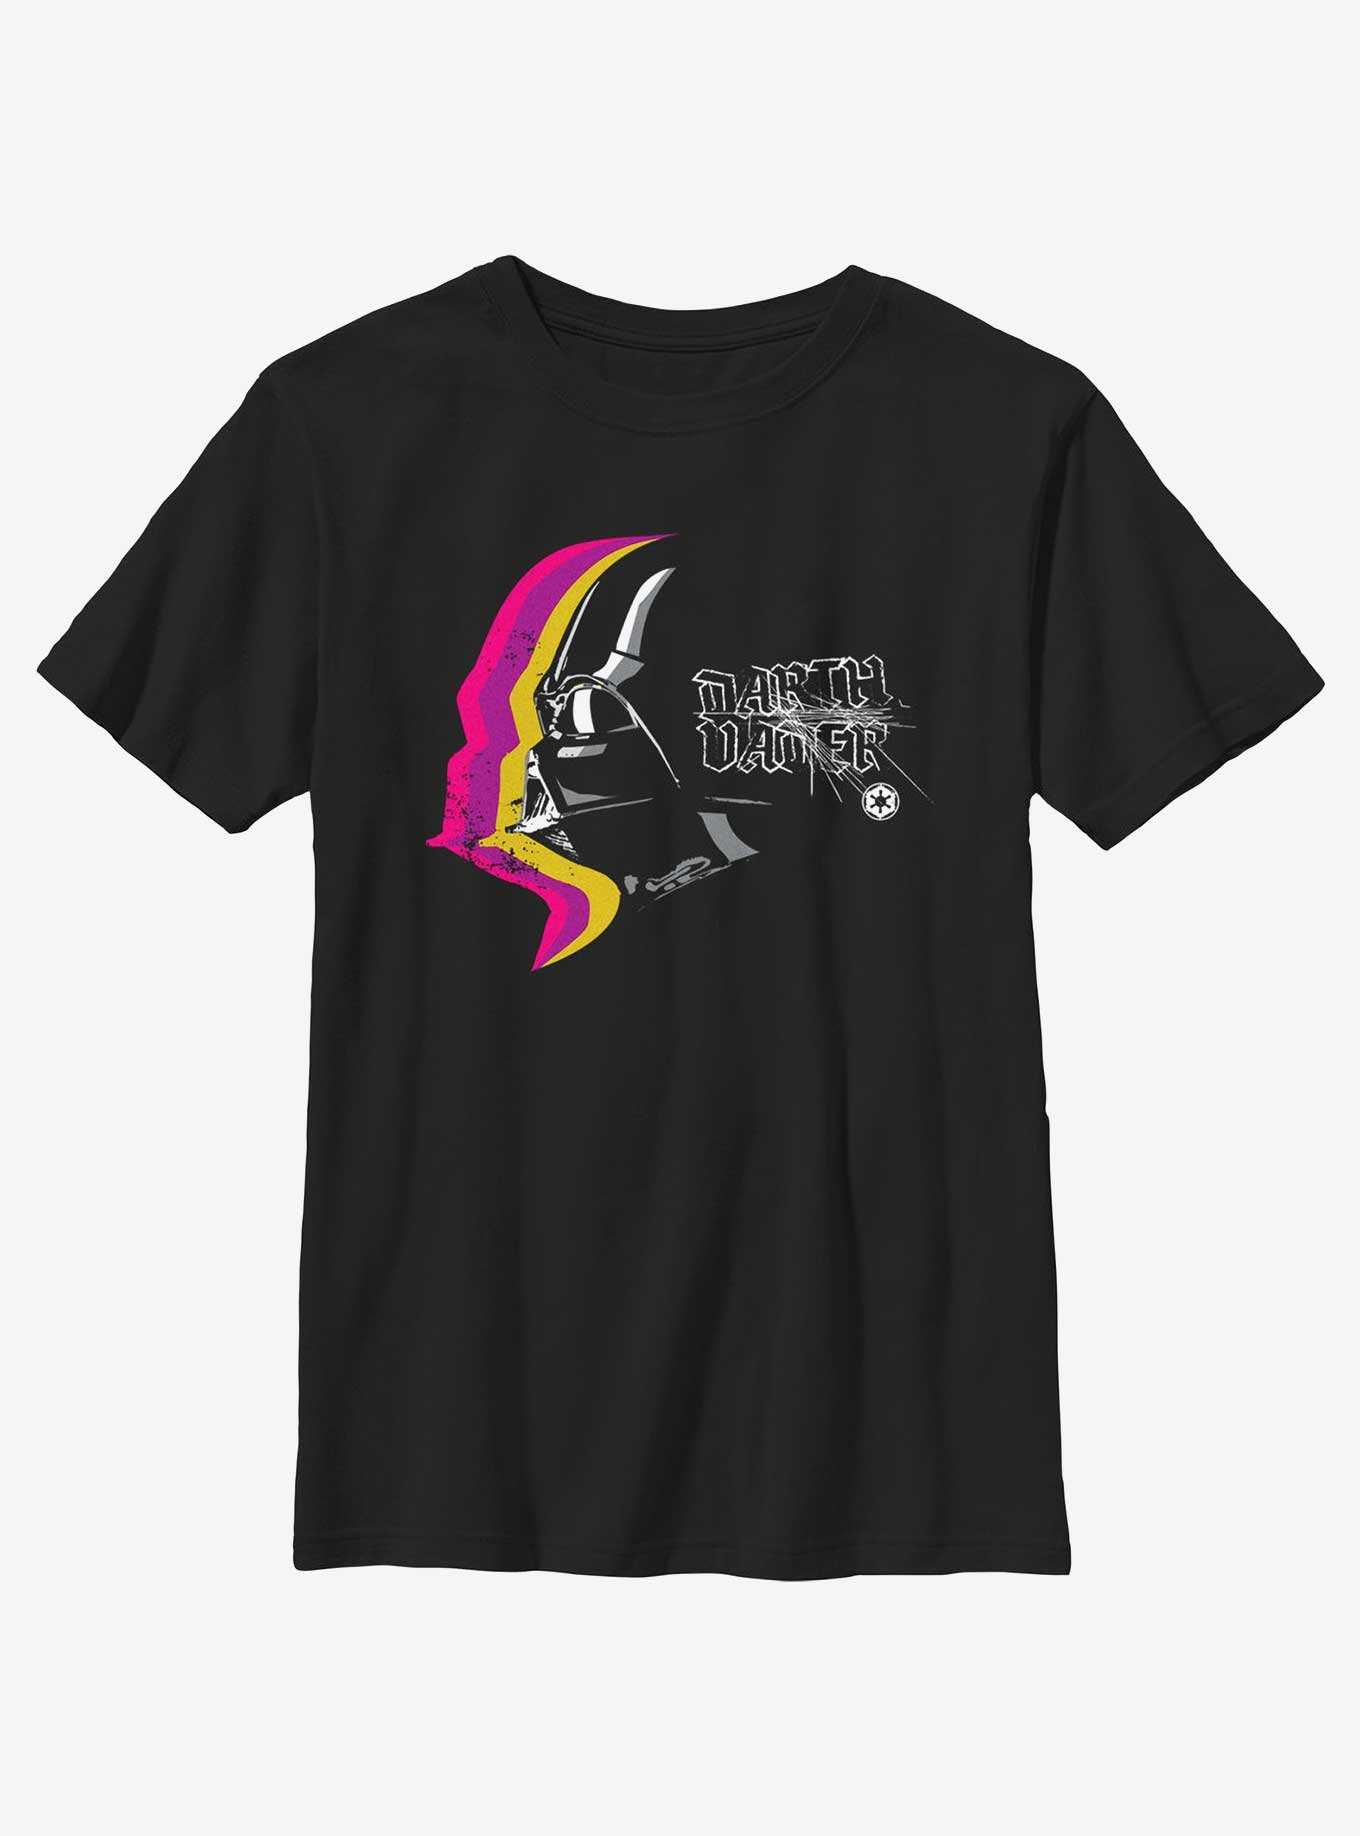 Star Wars Darth Vader Profile Youth T-Shirt, , hi-res